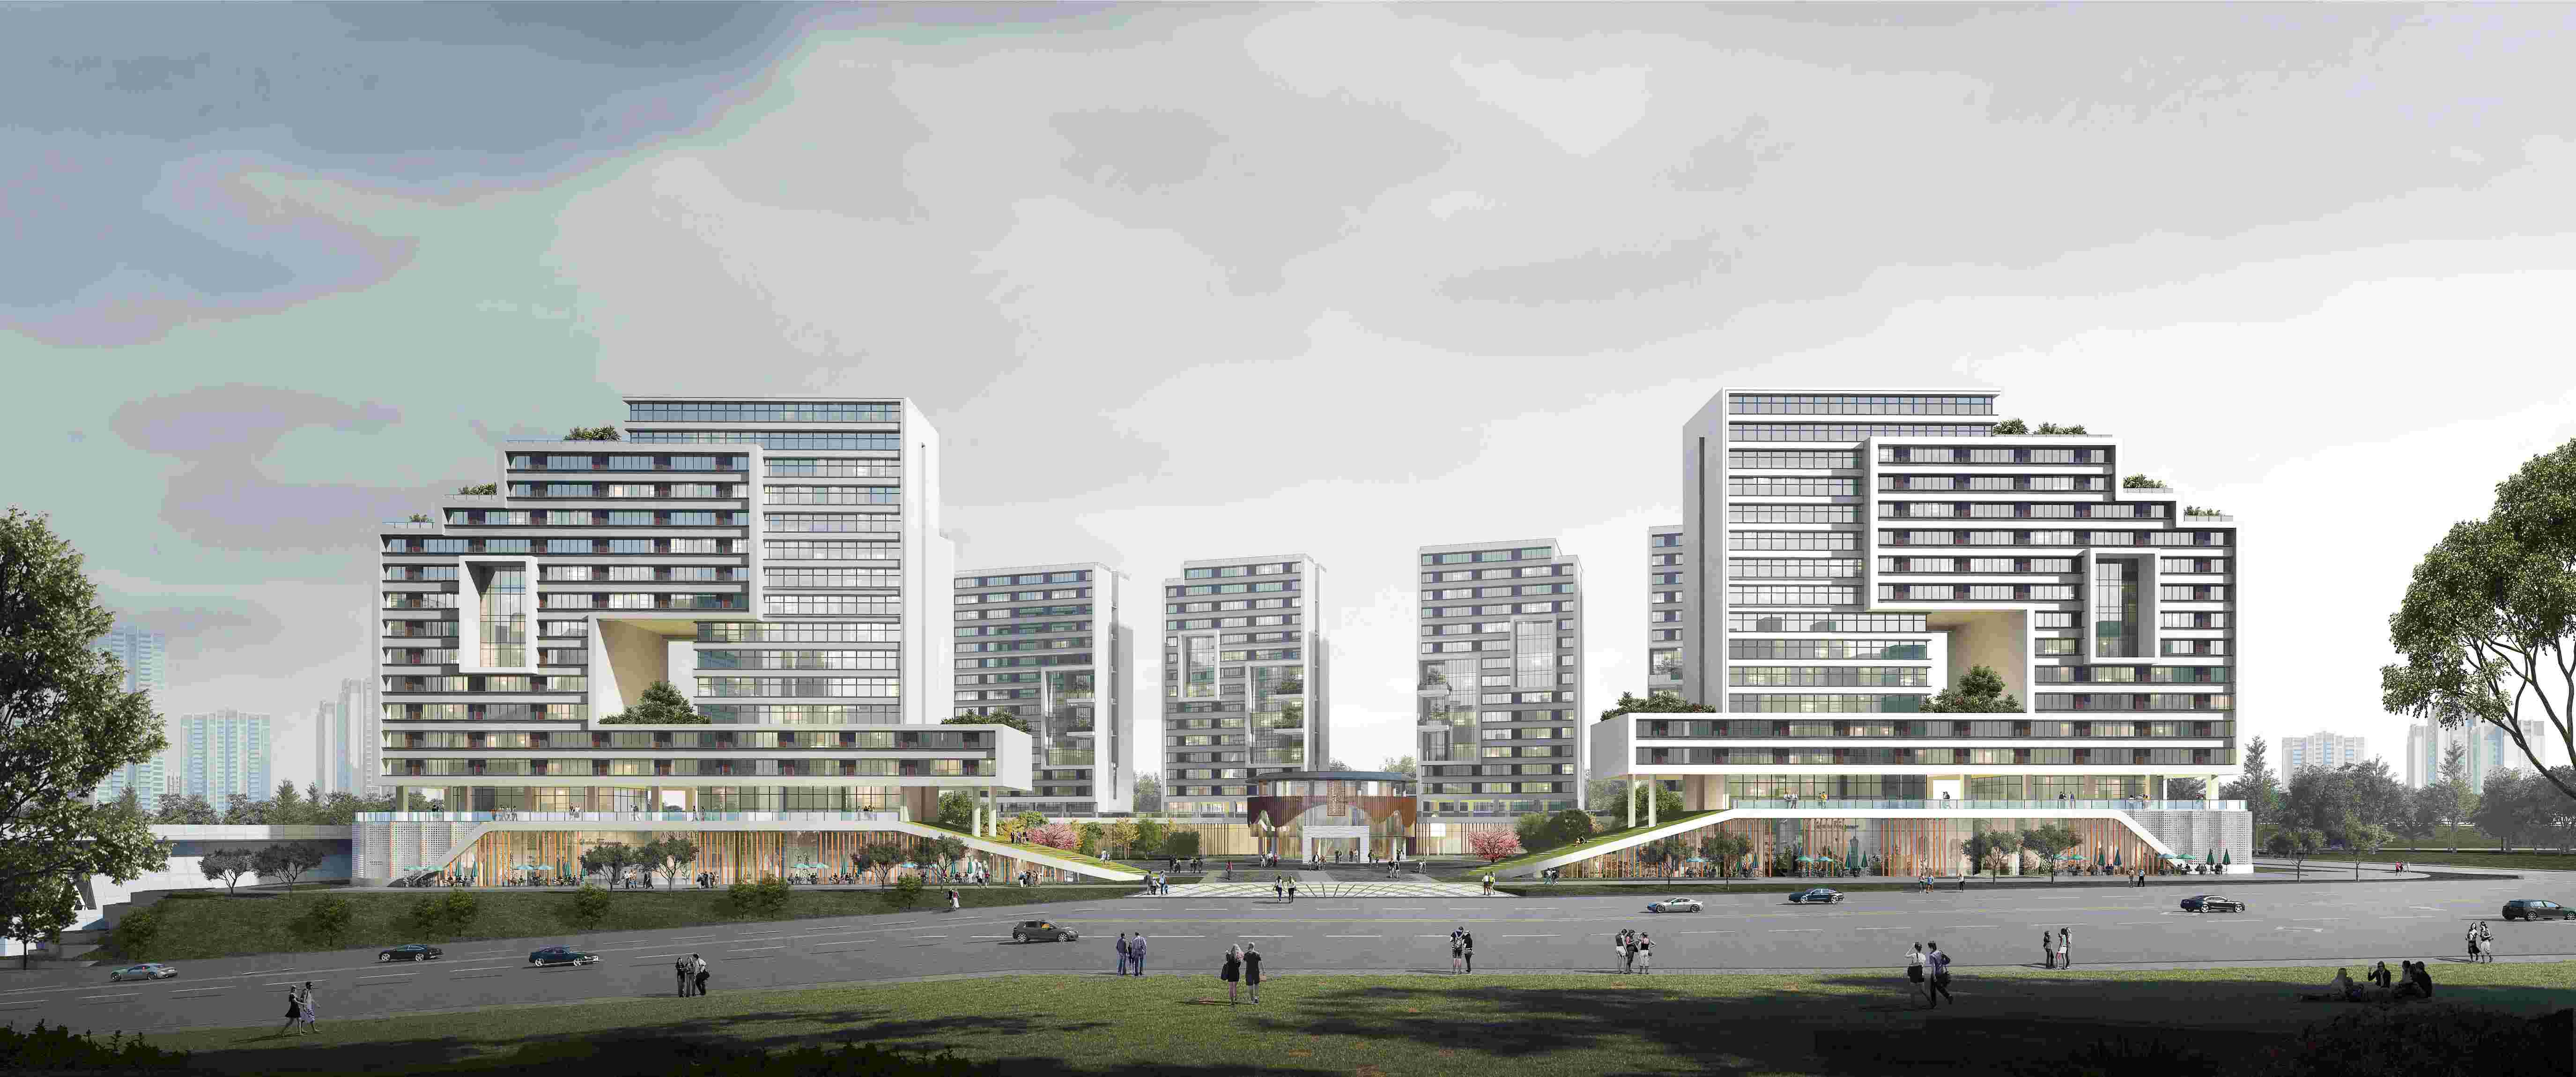 上杭县蛟洋工业区职工公寓（二期）建设项目（全过程工程咨询）